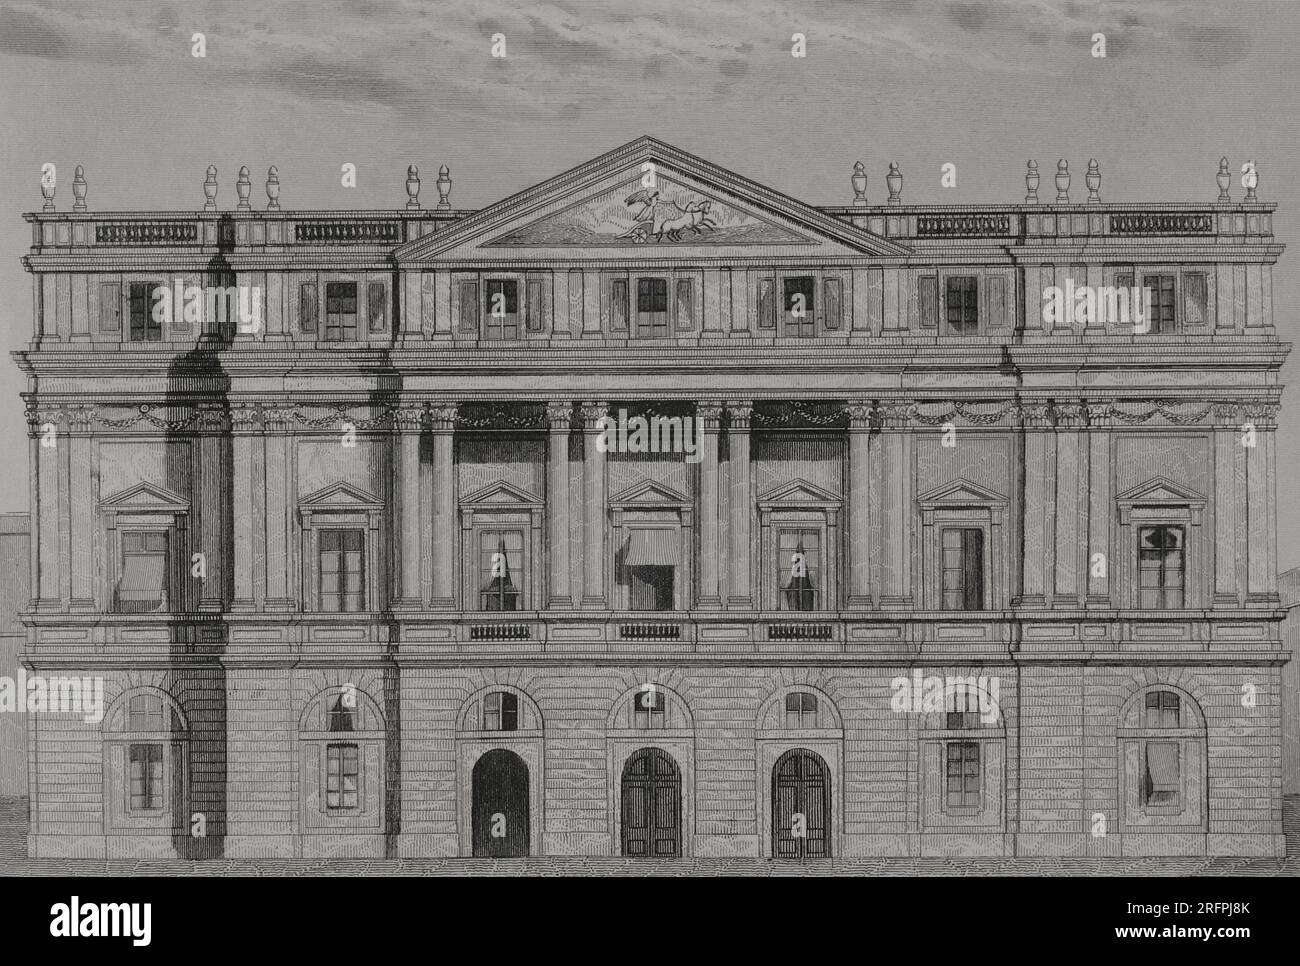 Italien. Mailand. La Scala. Blick auf die Hauptfassade. Gravur von A. Roca. "Los Héroes y las Grandezas de la Tierra". Band V. 1855. Stockfoto